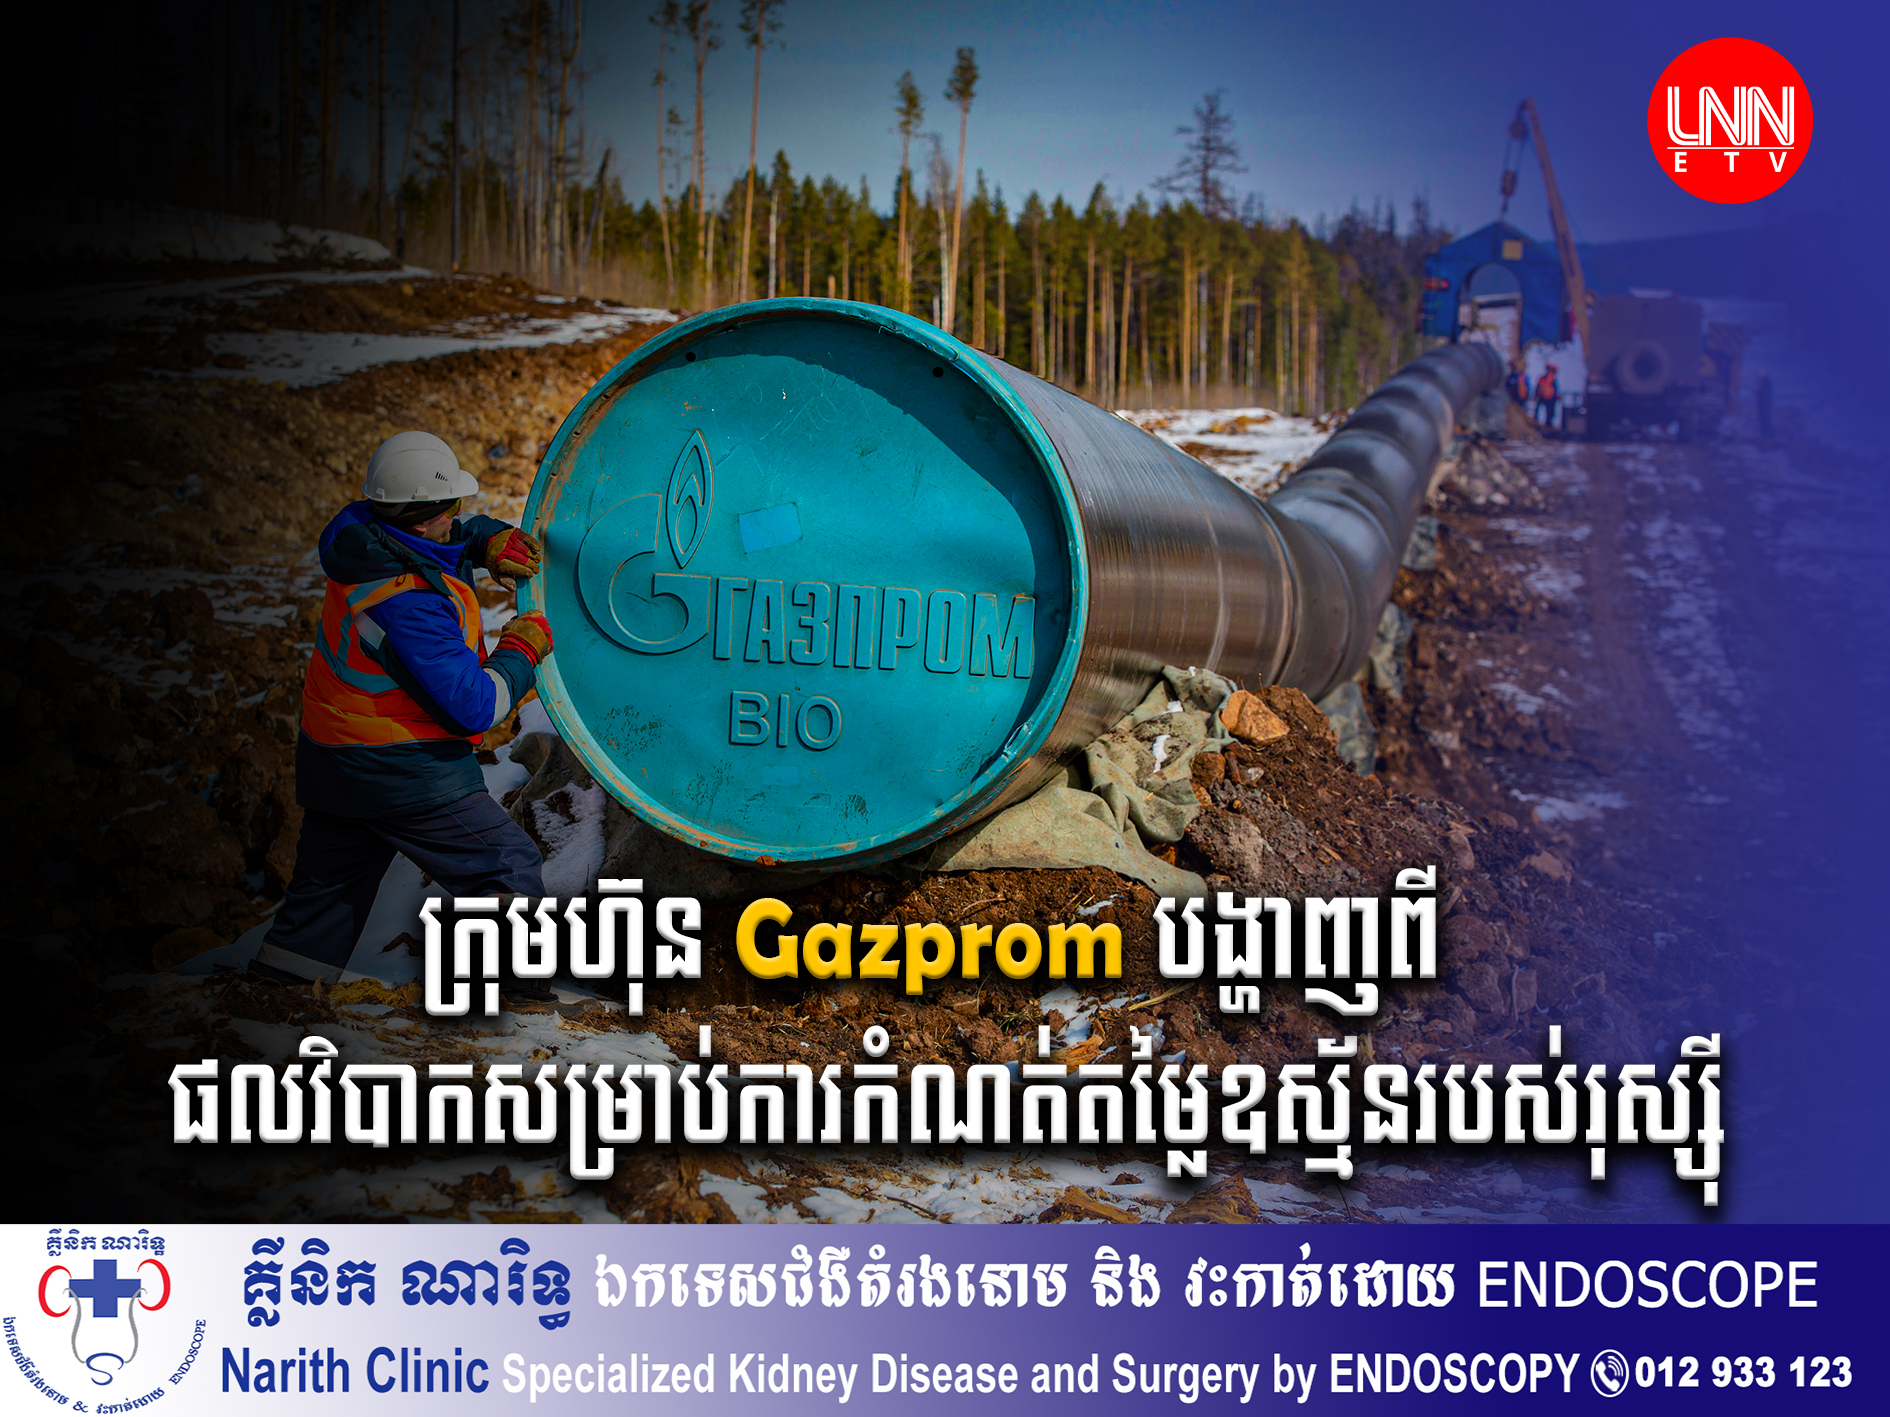 ក្រុមហ៊ុន Gazprom បានបង្ហាញពីផលវិបាកសម្រាប់ការកំណត់តម្លៃលើការលក់ឧស្ម័នរបស់រុស្ស៊ី